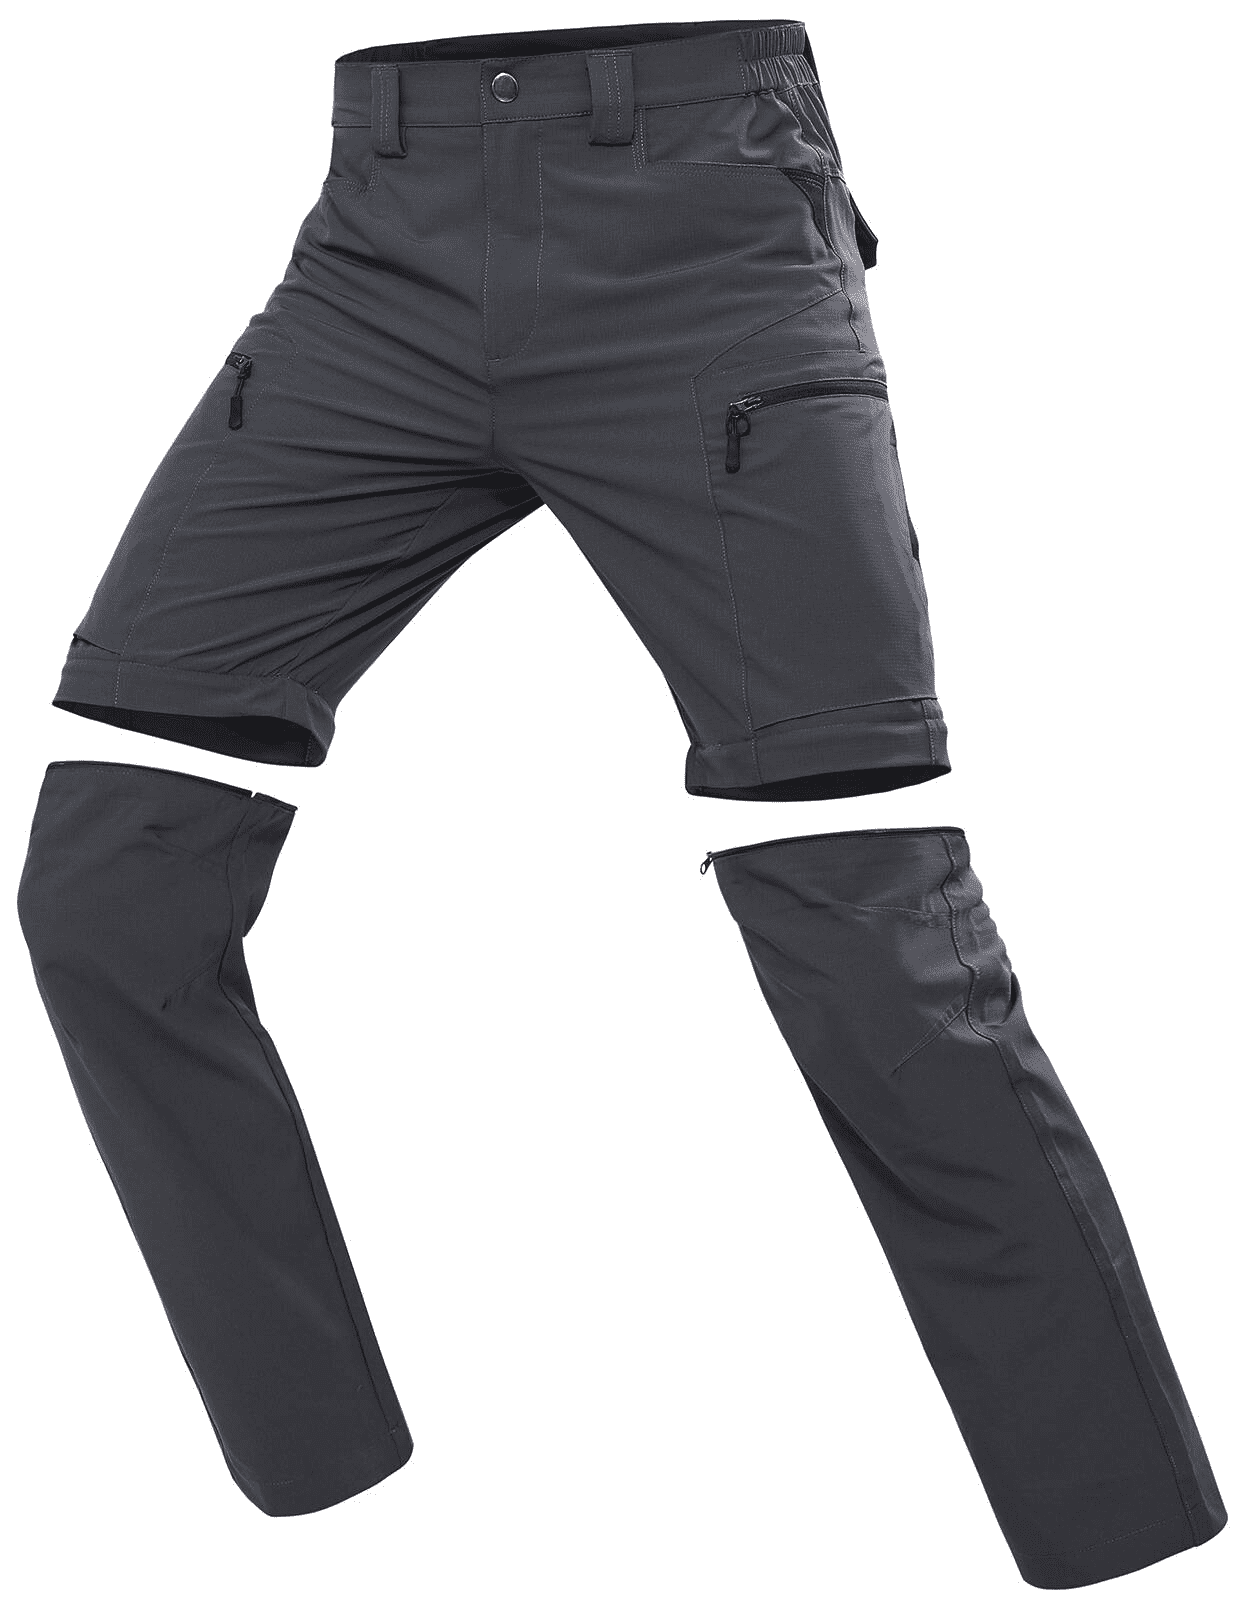 Hiauspor Men's Convertible Pants Quick Dry Zip Off Lightweight for